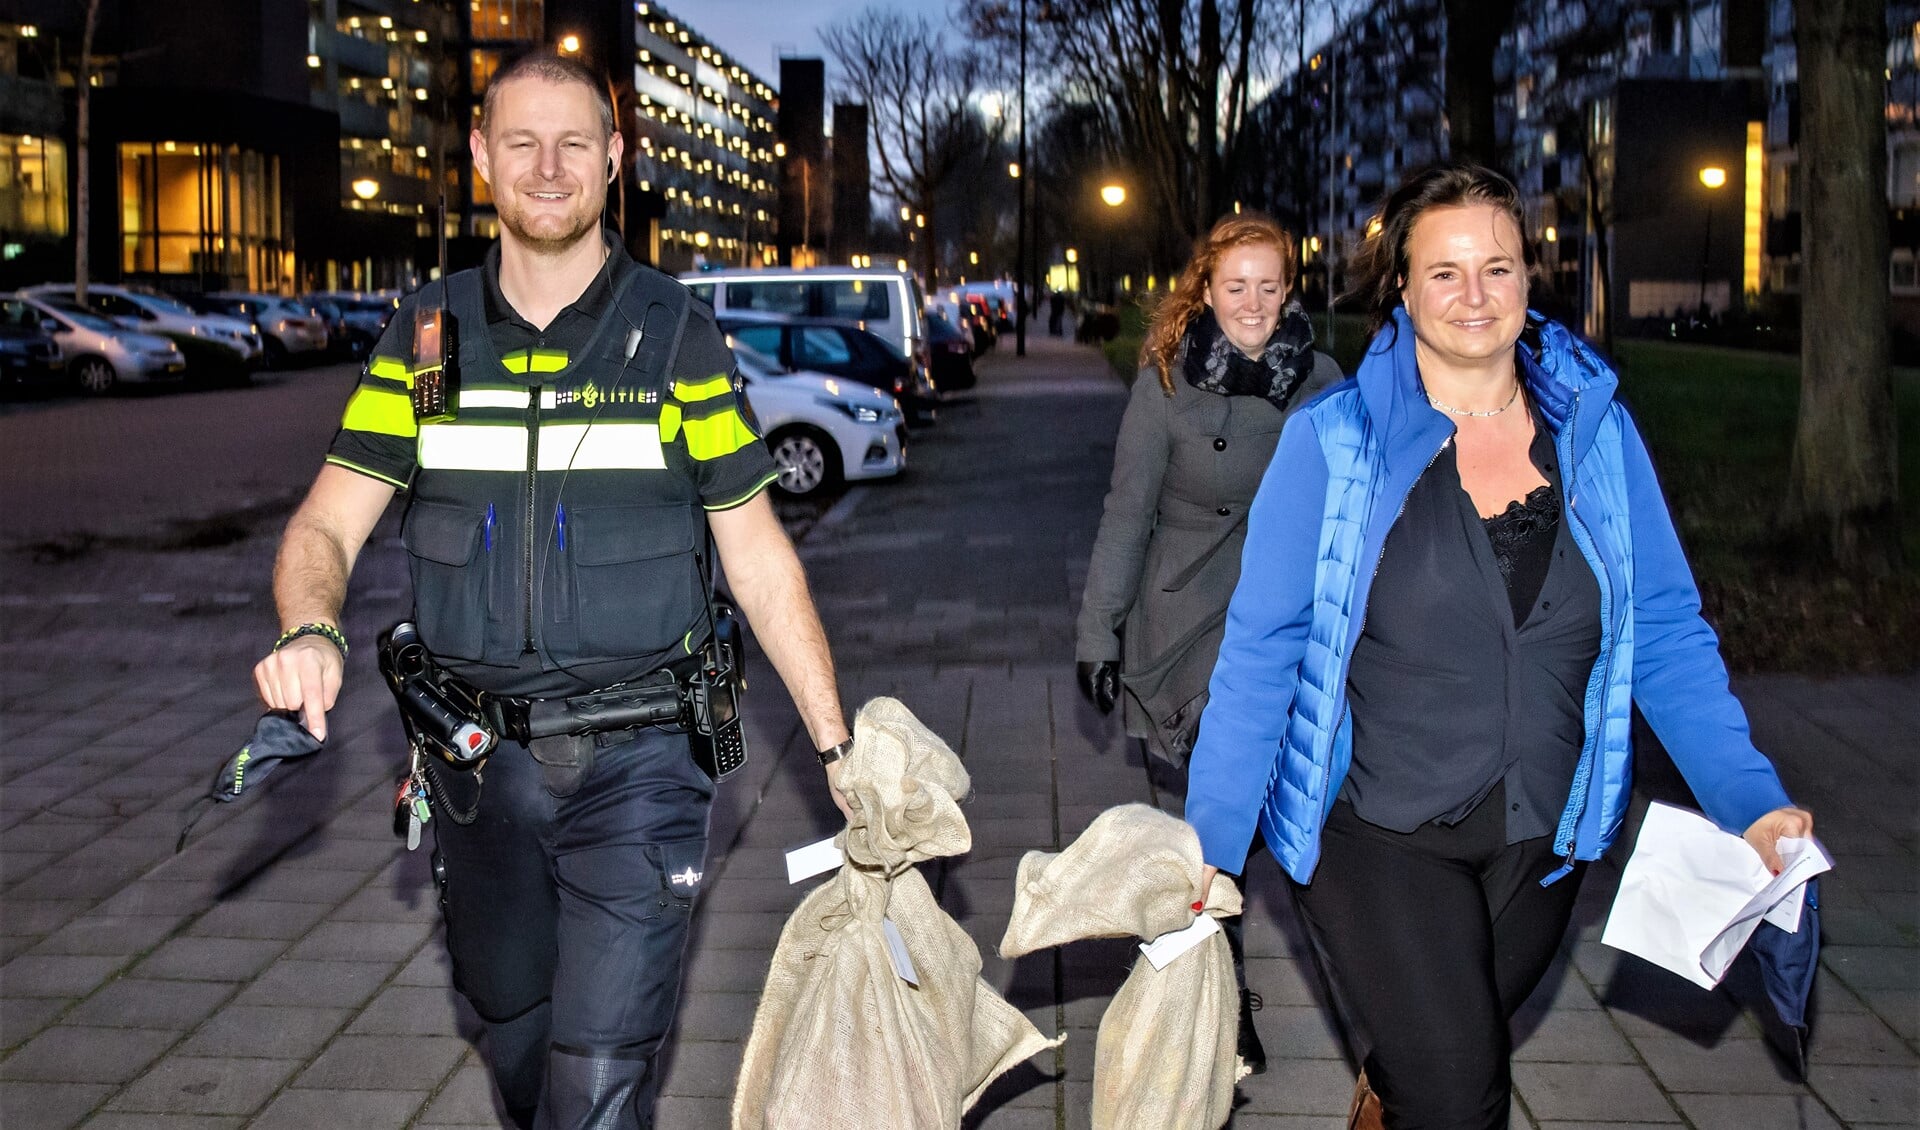 Onder andere wijkagent Robin Hoogervorst en wethouder Nadine Stemerdink hielpen bij de bezorging van de pakjes voor Sintvoorieder1 (foto: Paul Voorham).